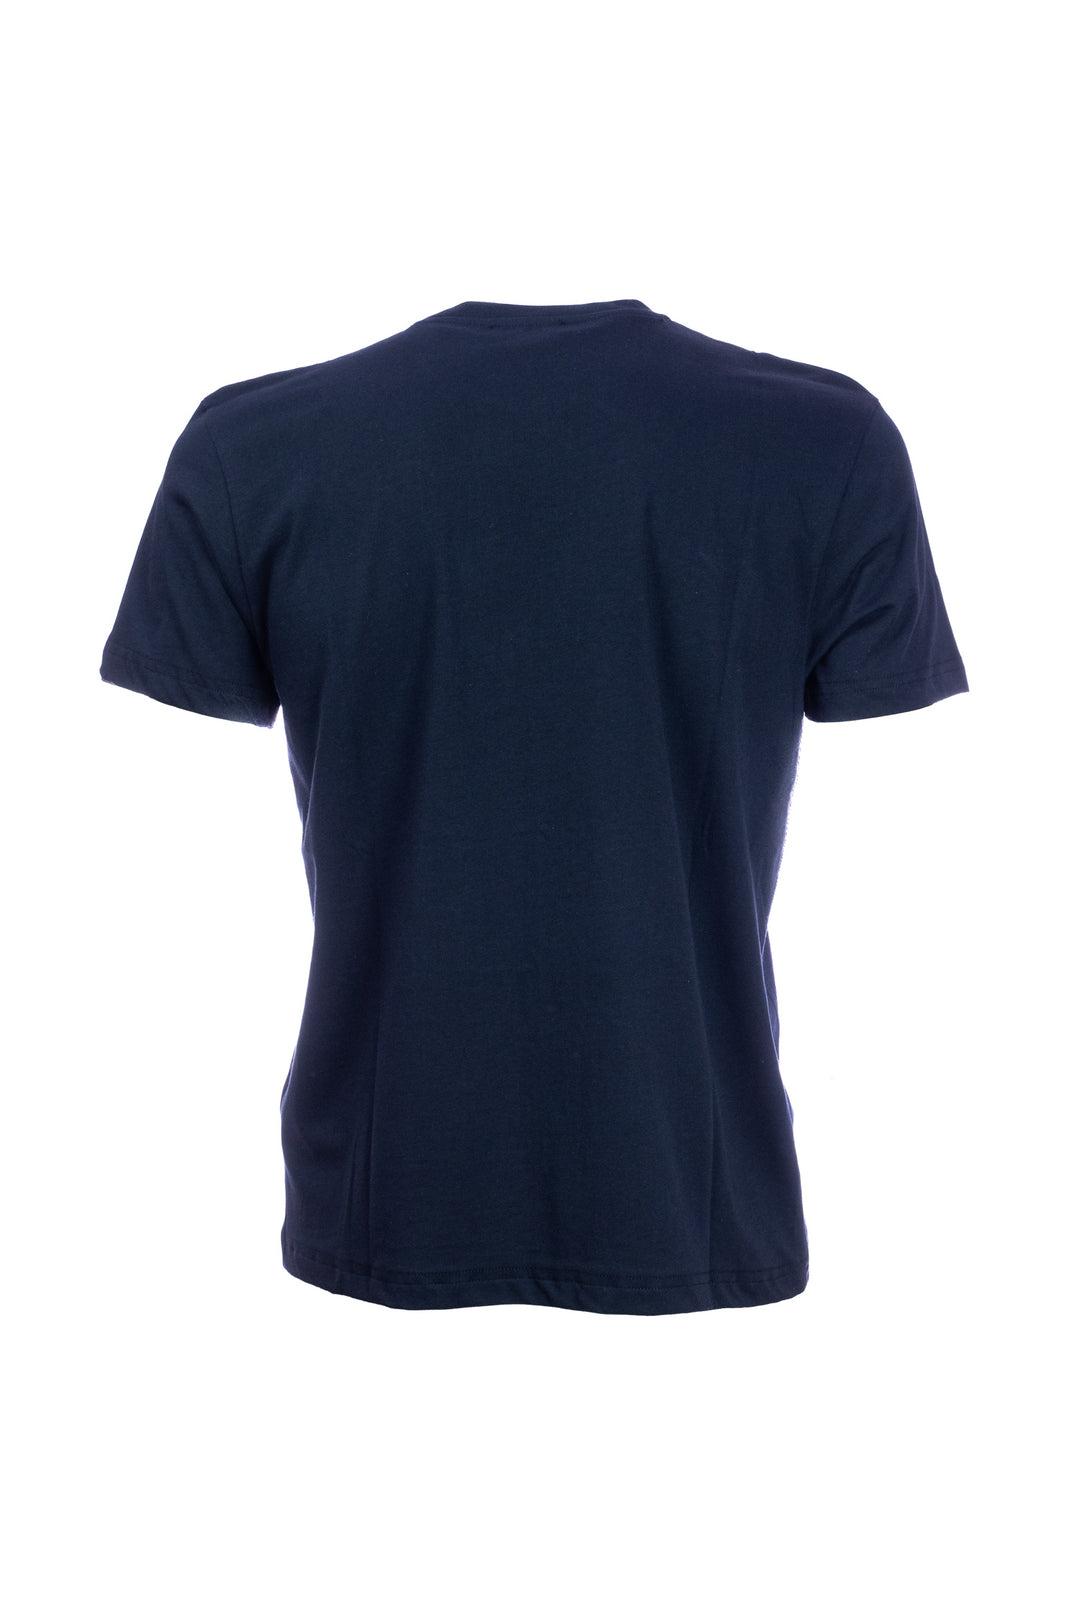 W-POSTAGE T-shirt blu scuro in cotone con taschino stampato con palme - Mancinelli 1954